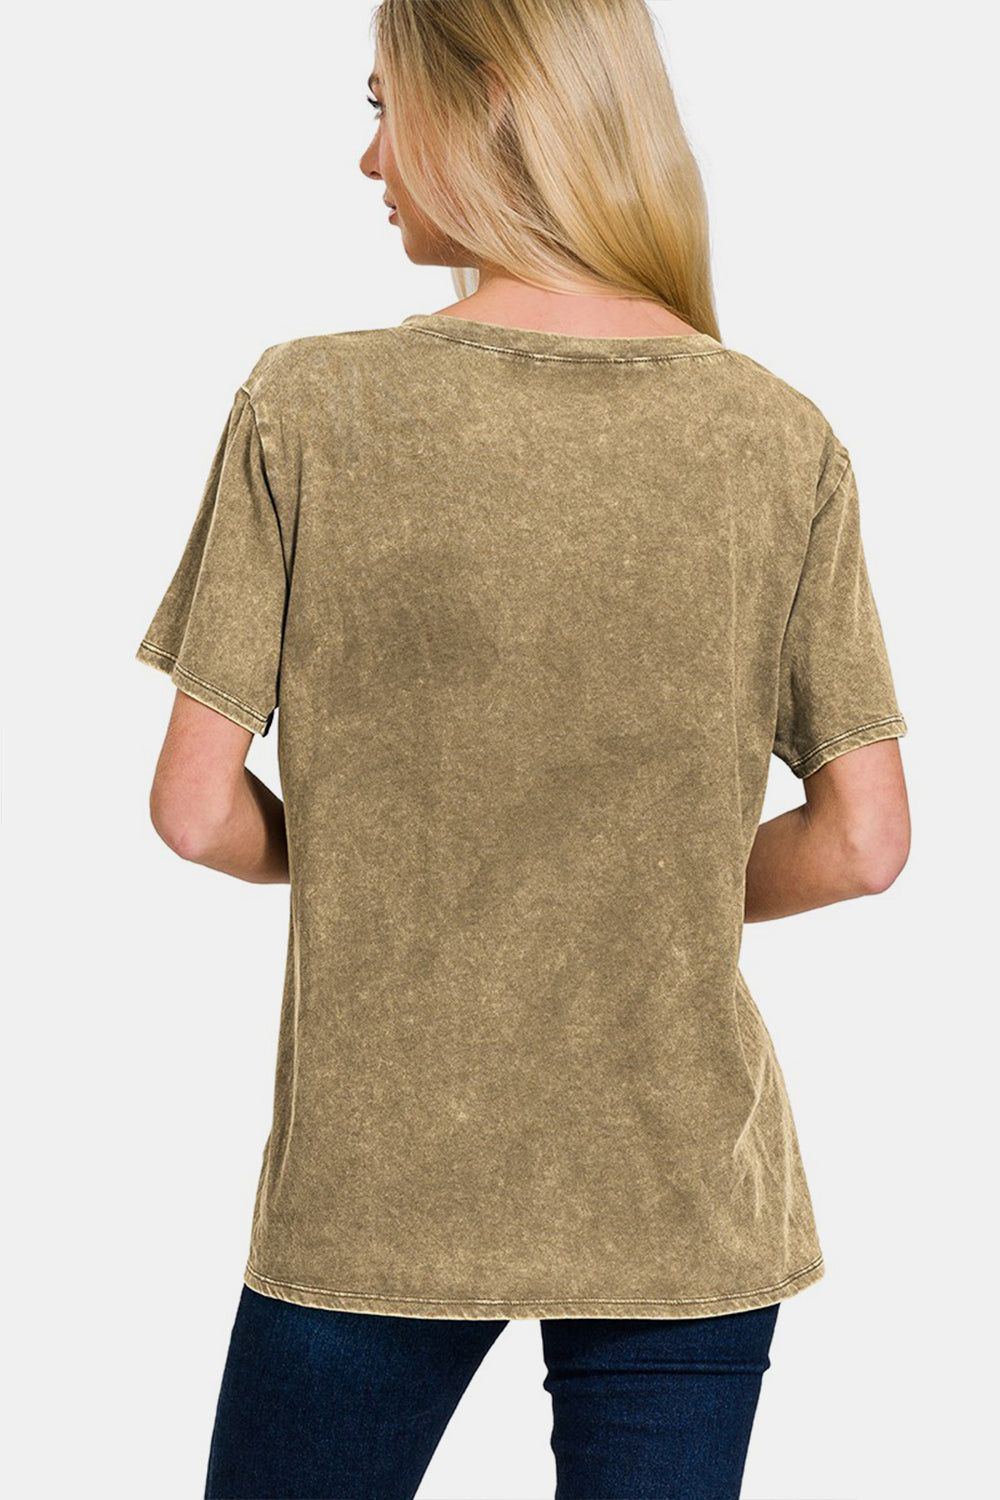 Zenana gewaschenes kurzärmliges T-Shirt mit V-Ausschnitt